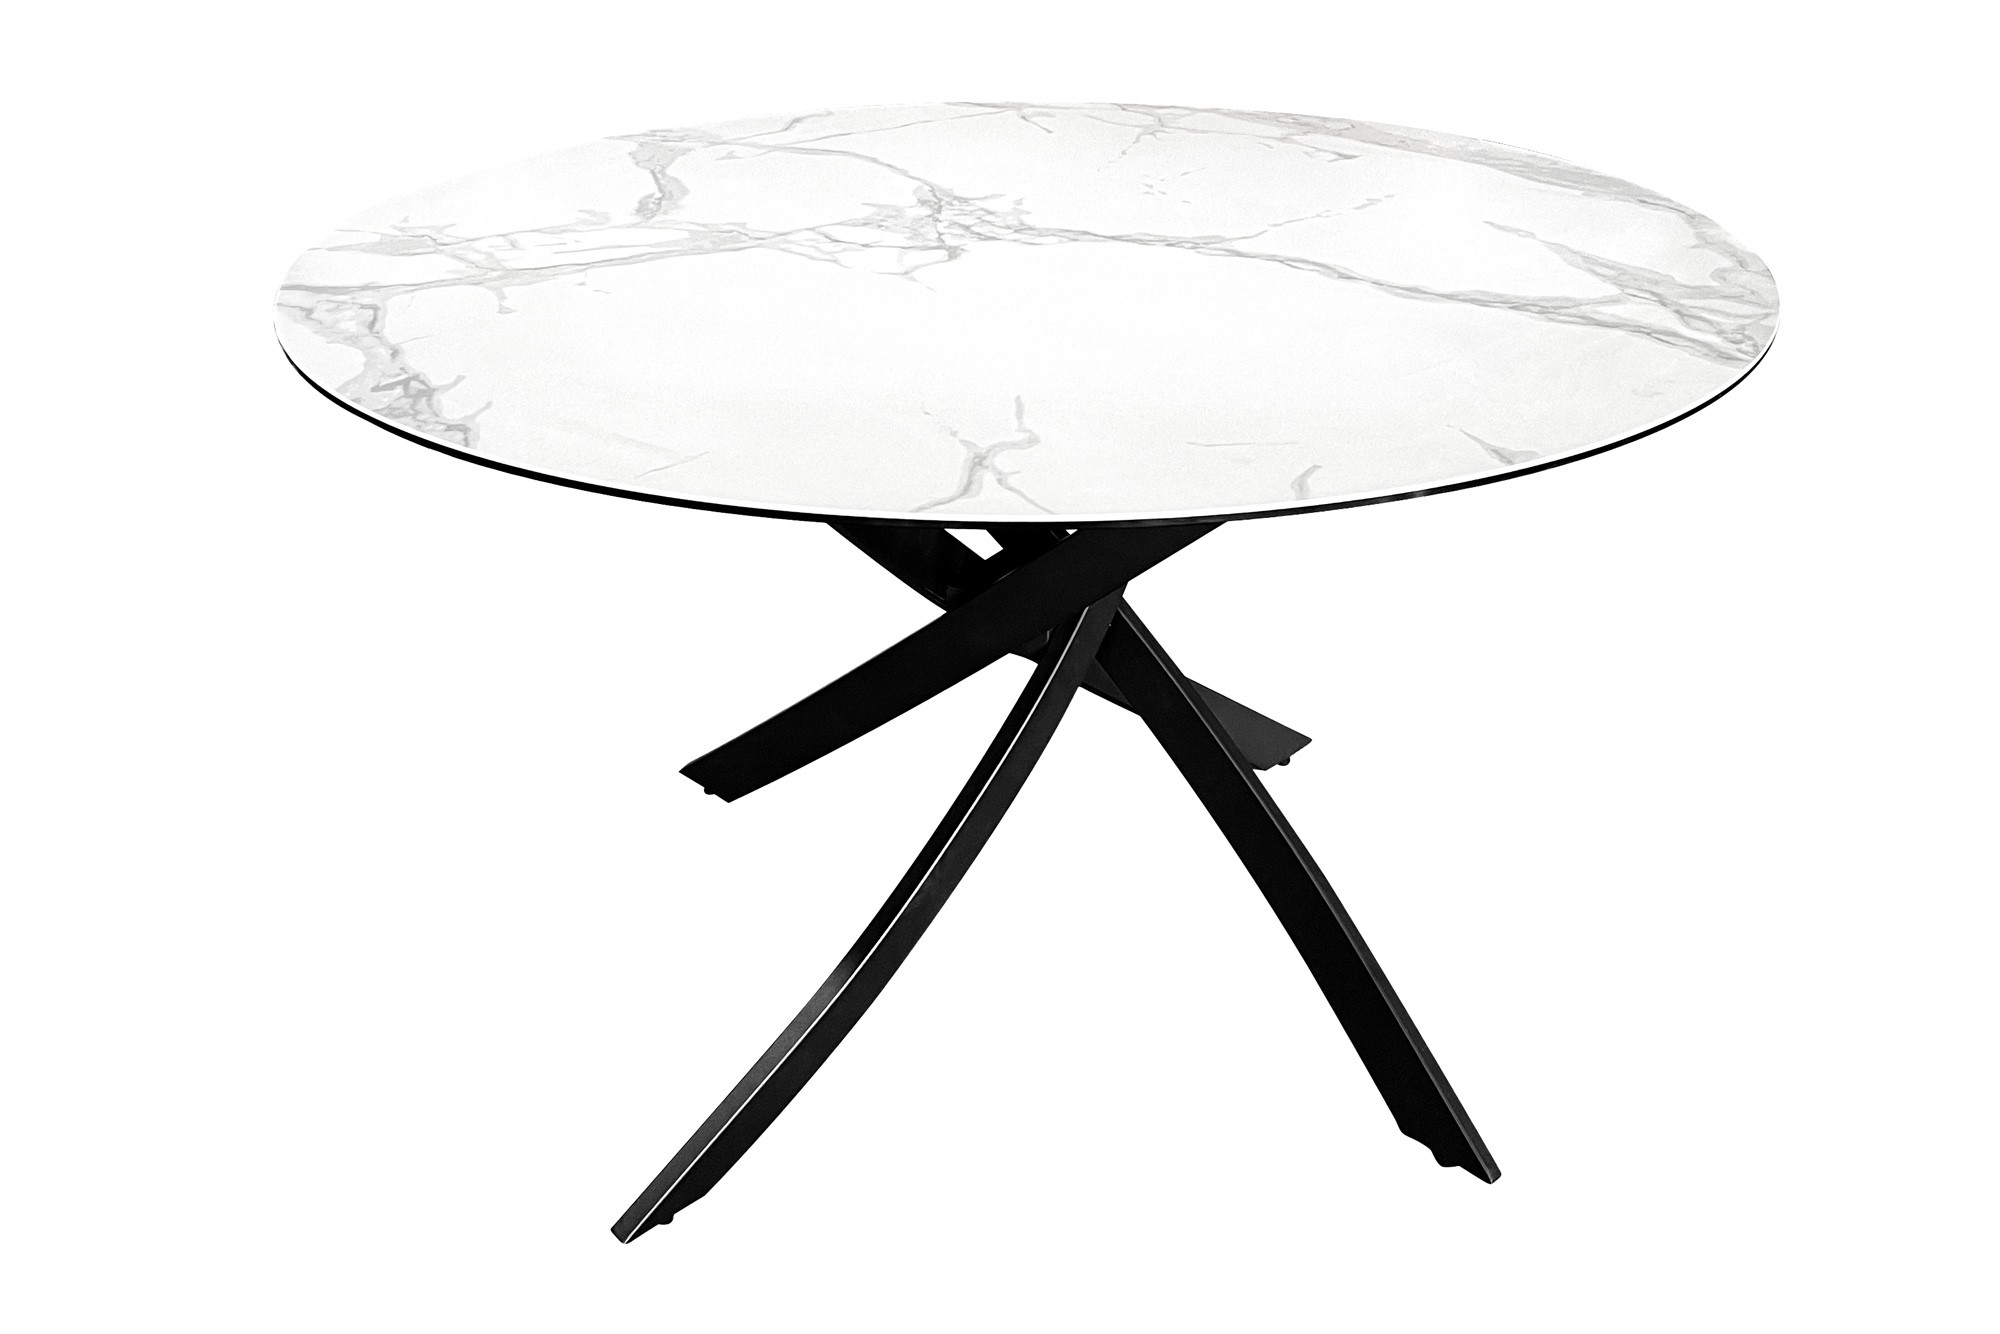 Estila Moderní kulatý jídelní stůl Valldemossa s bílou vrchní deskou s mramorovým designem a překříženýma nohama 120 cm